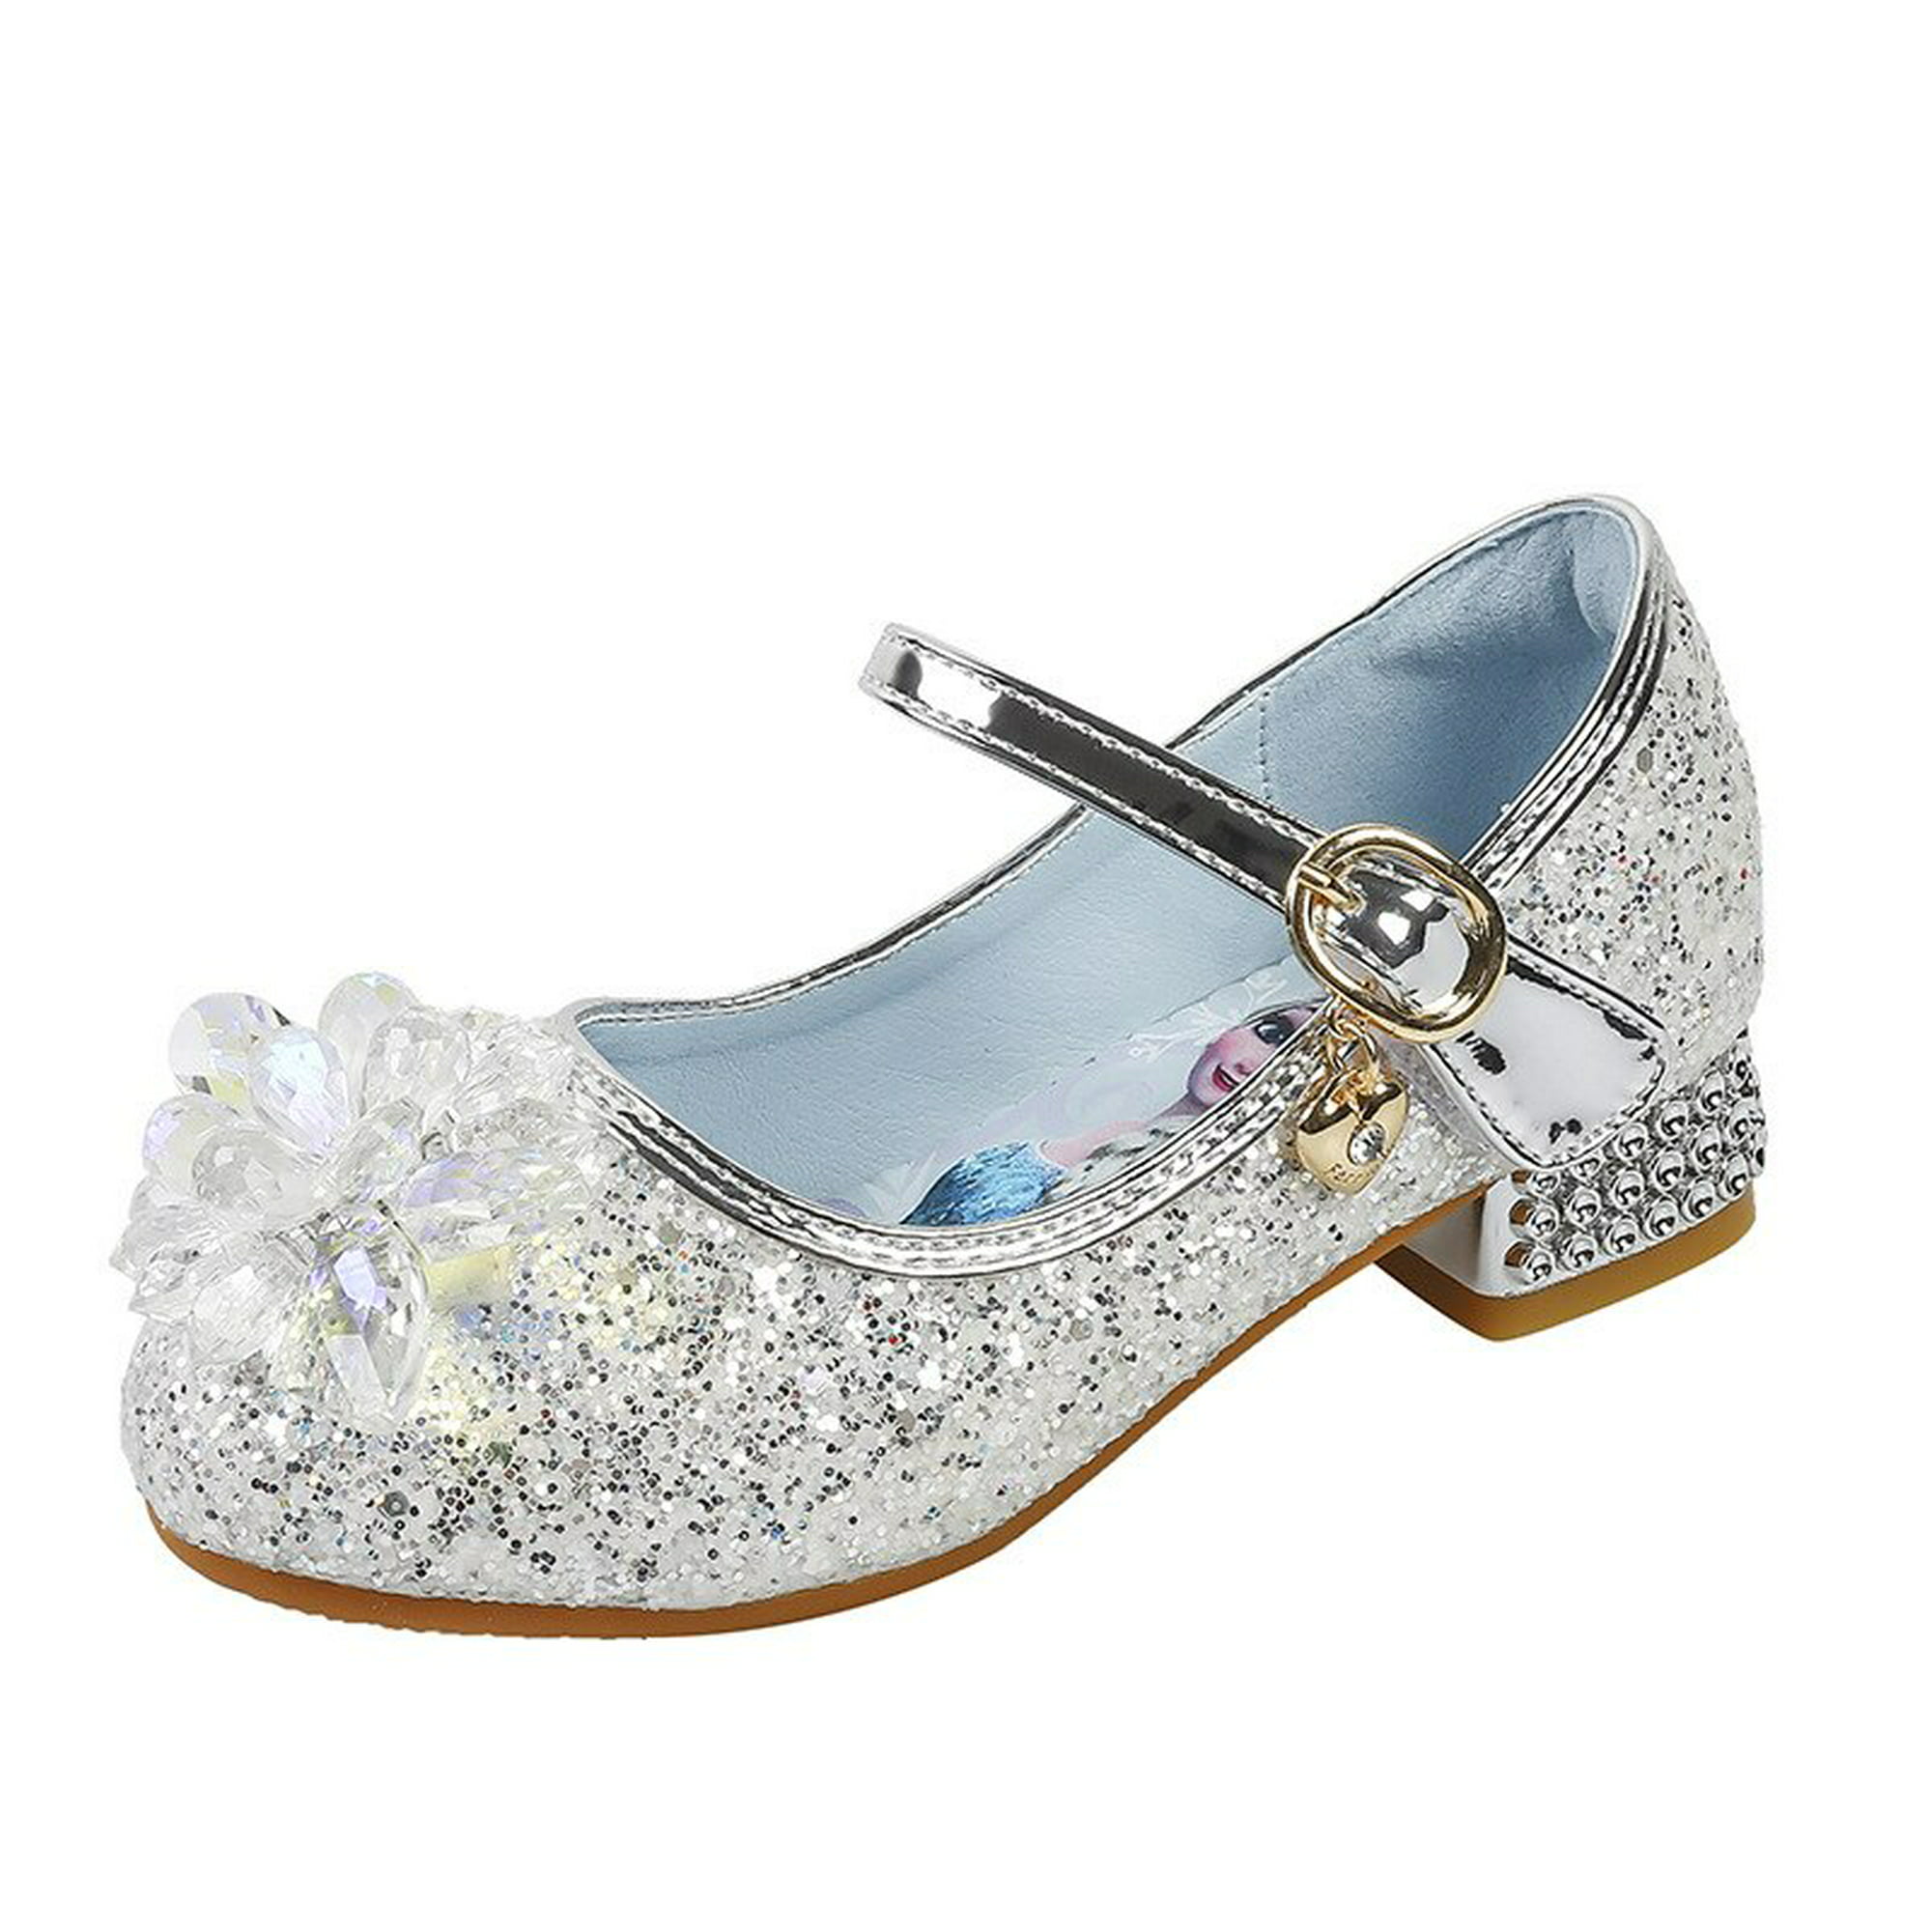 Disney niñas tacones altos primavera nuevos zapatos de cristal para niños  zapatos de cuero de baile niñas pequeñas frozen elsa solo shoes35-Insole